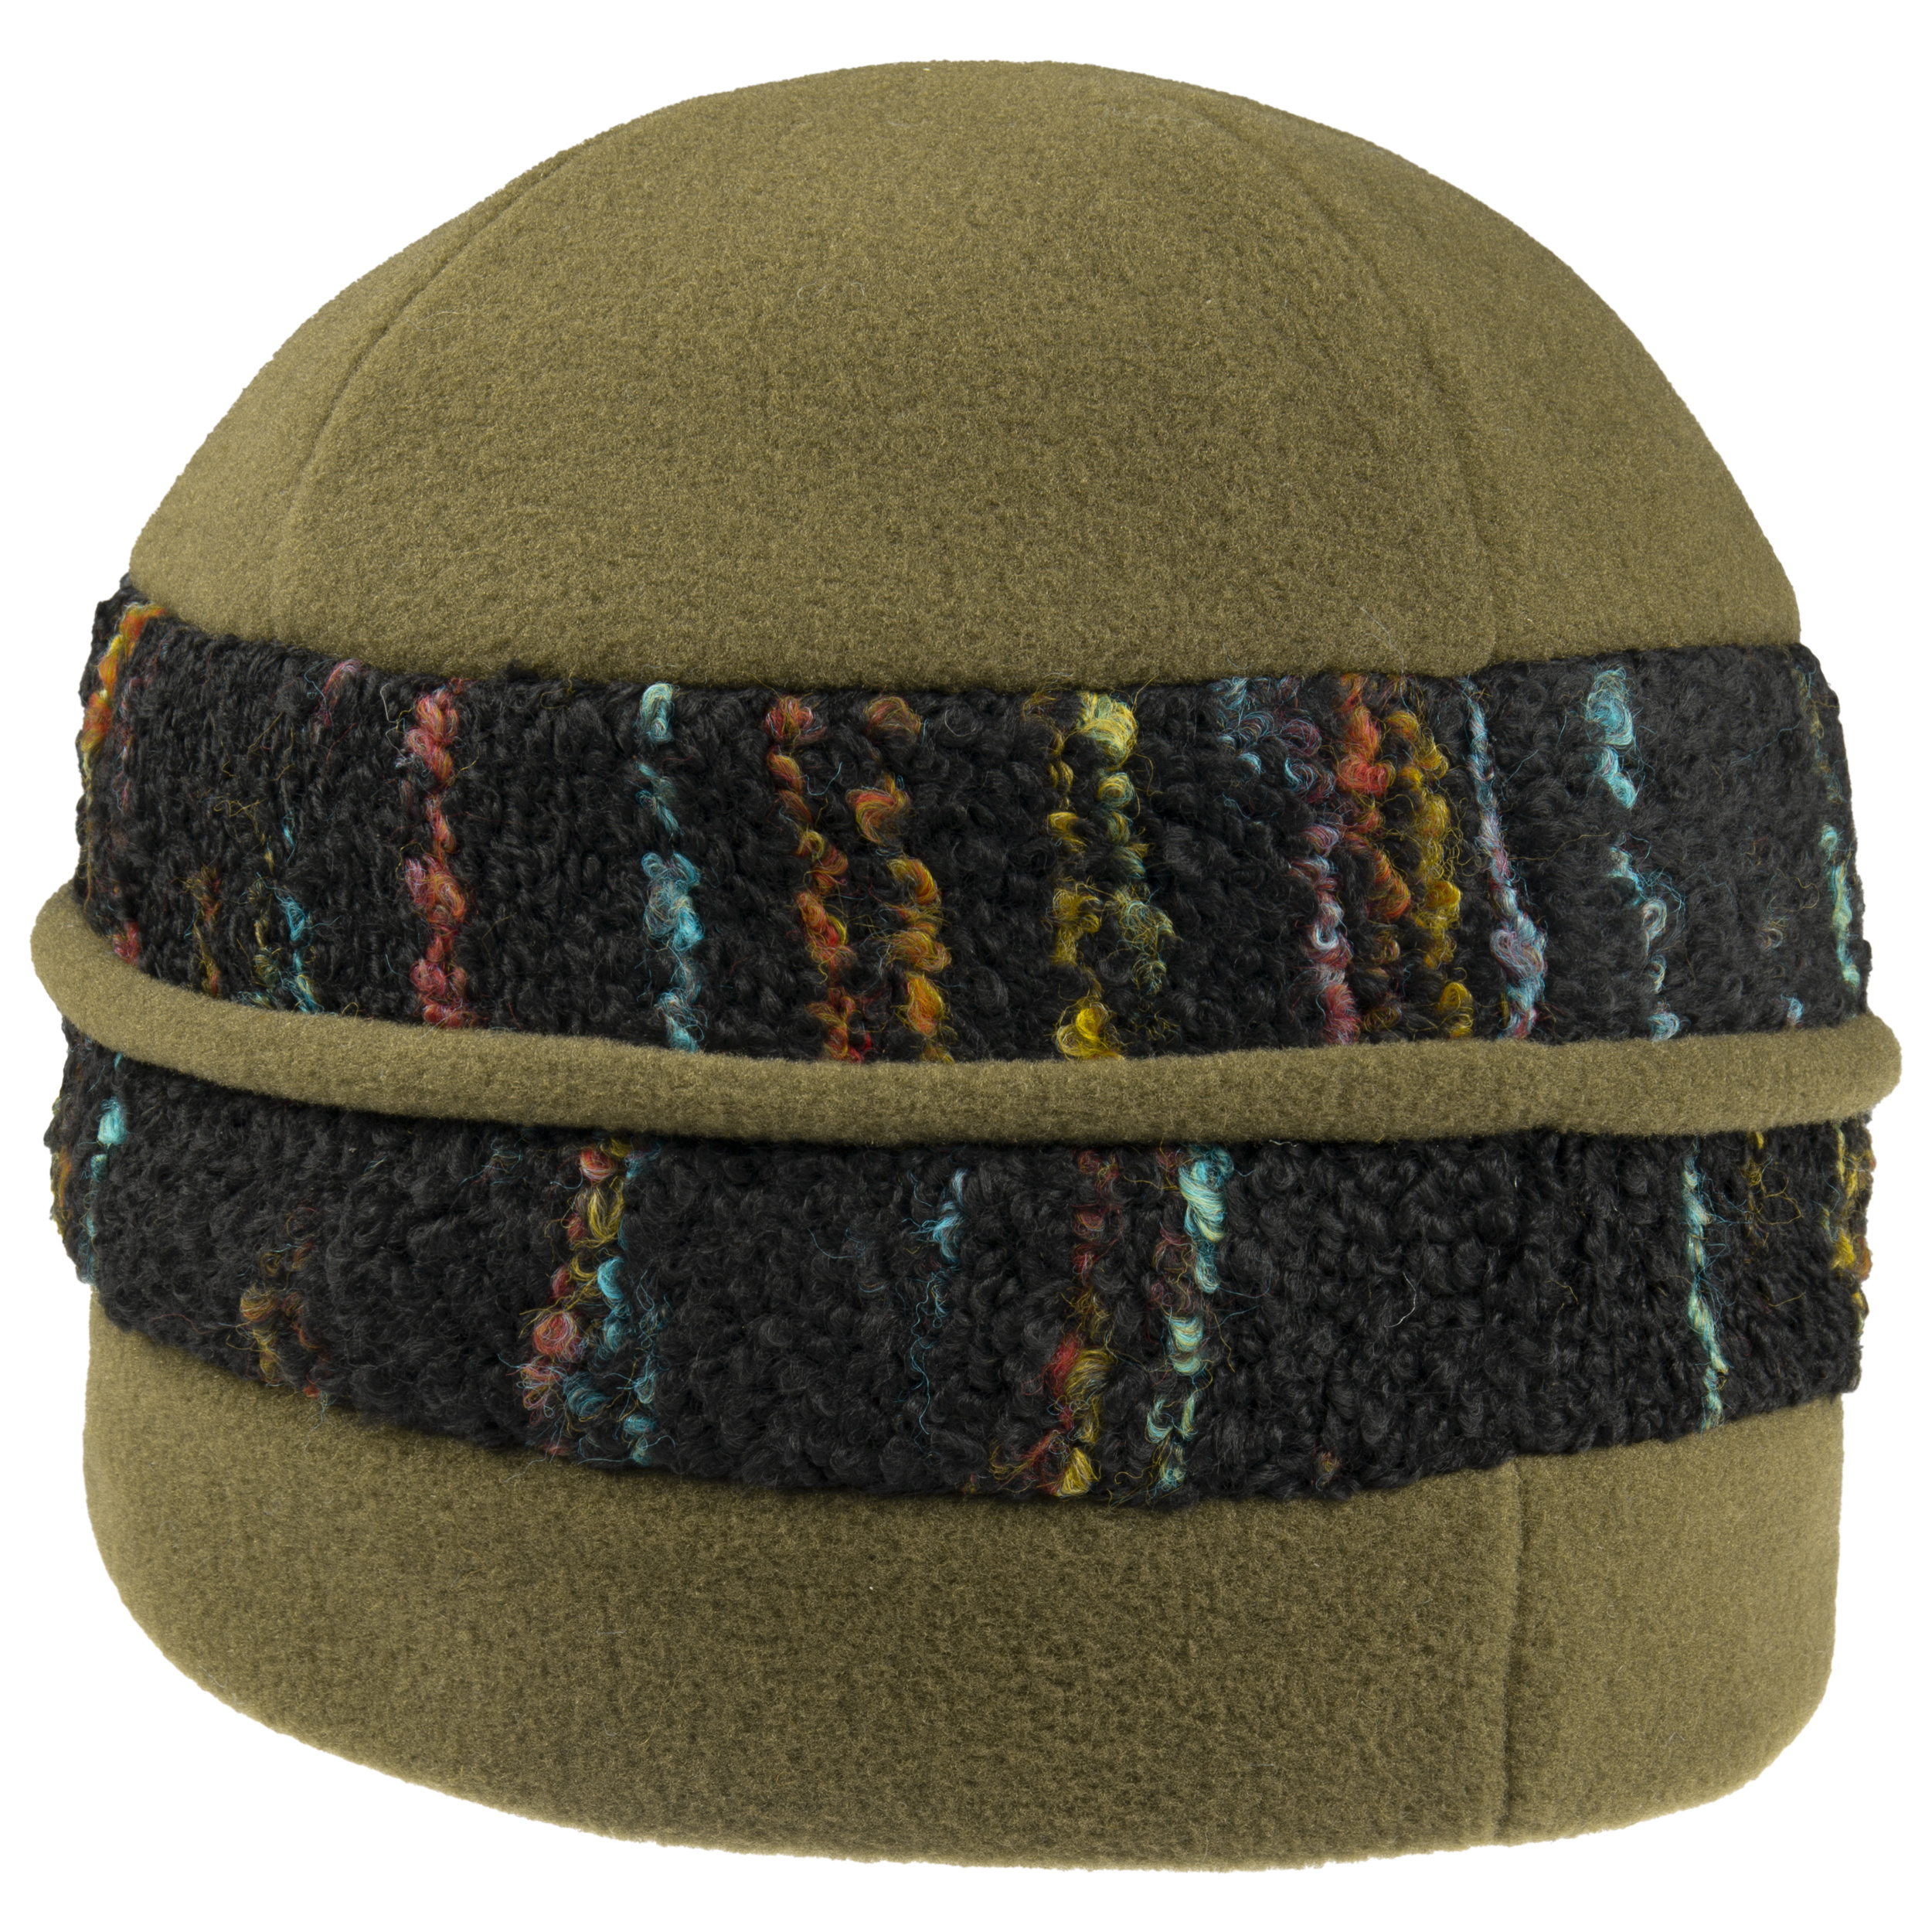 Schildmütze in 3 Farben aus Fleece Mütze Mützen neu